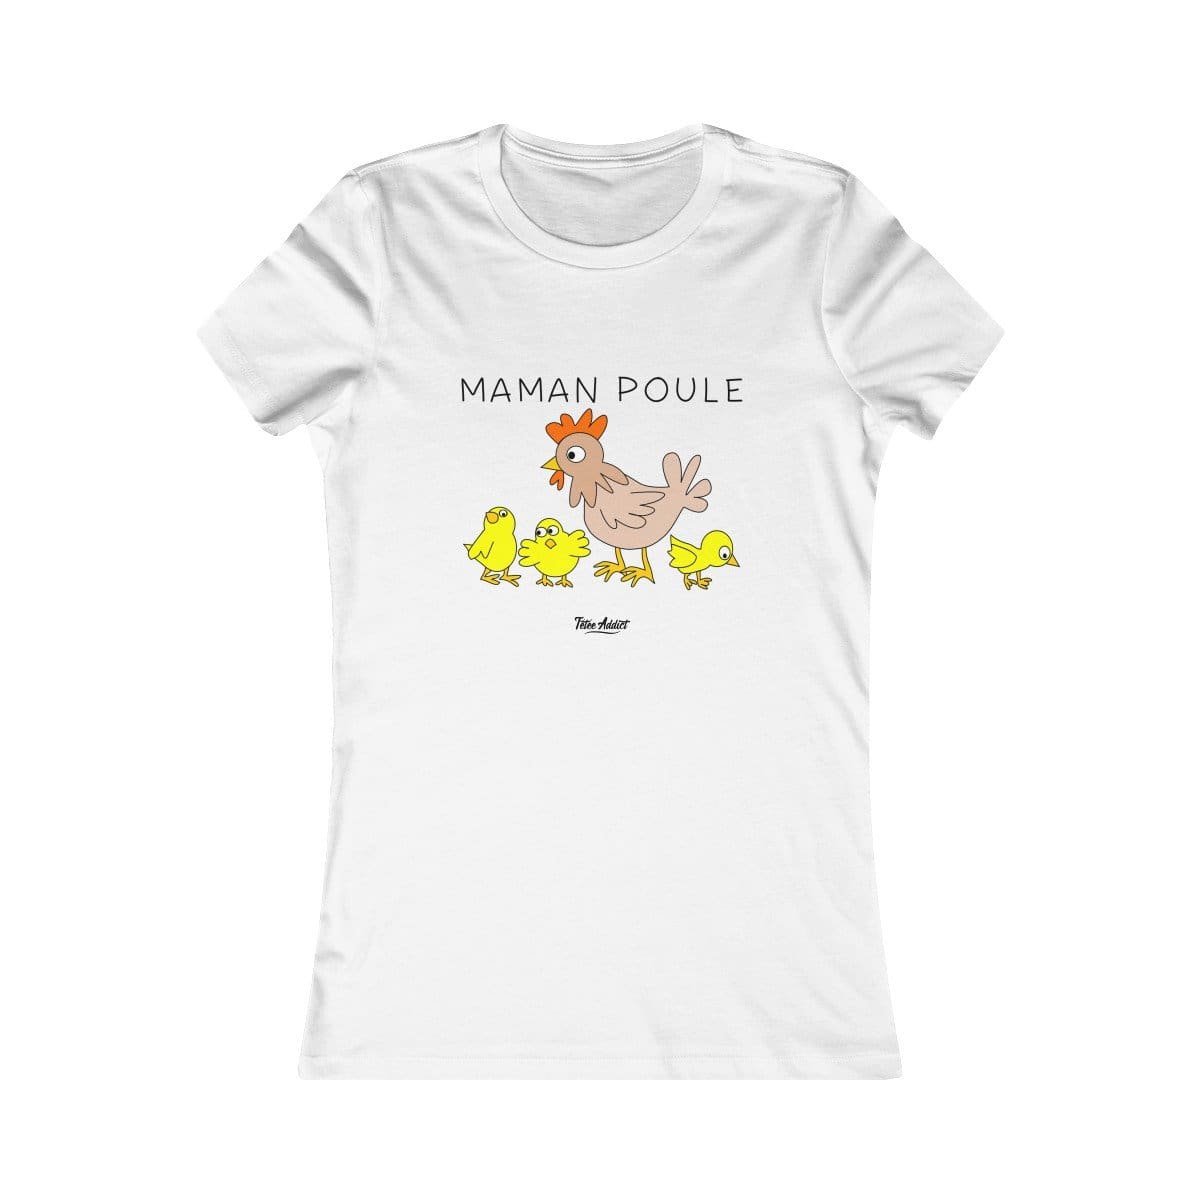 T-shirt Femme Maternage Personnalisé Maman Poule